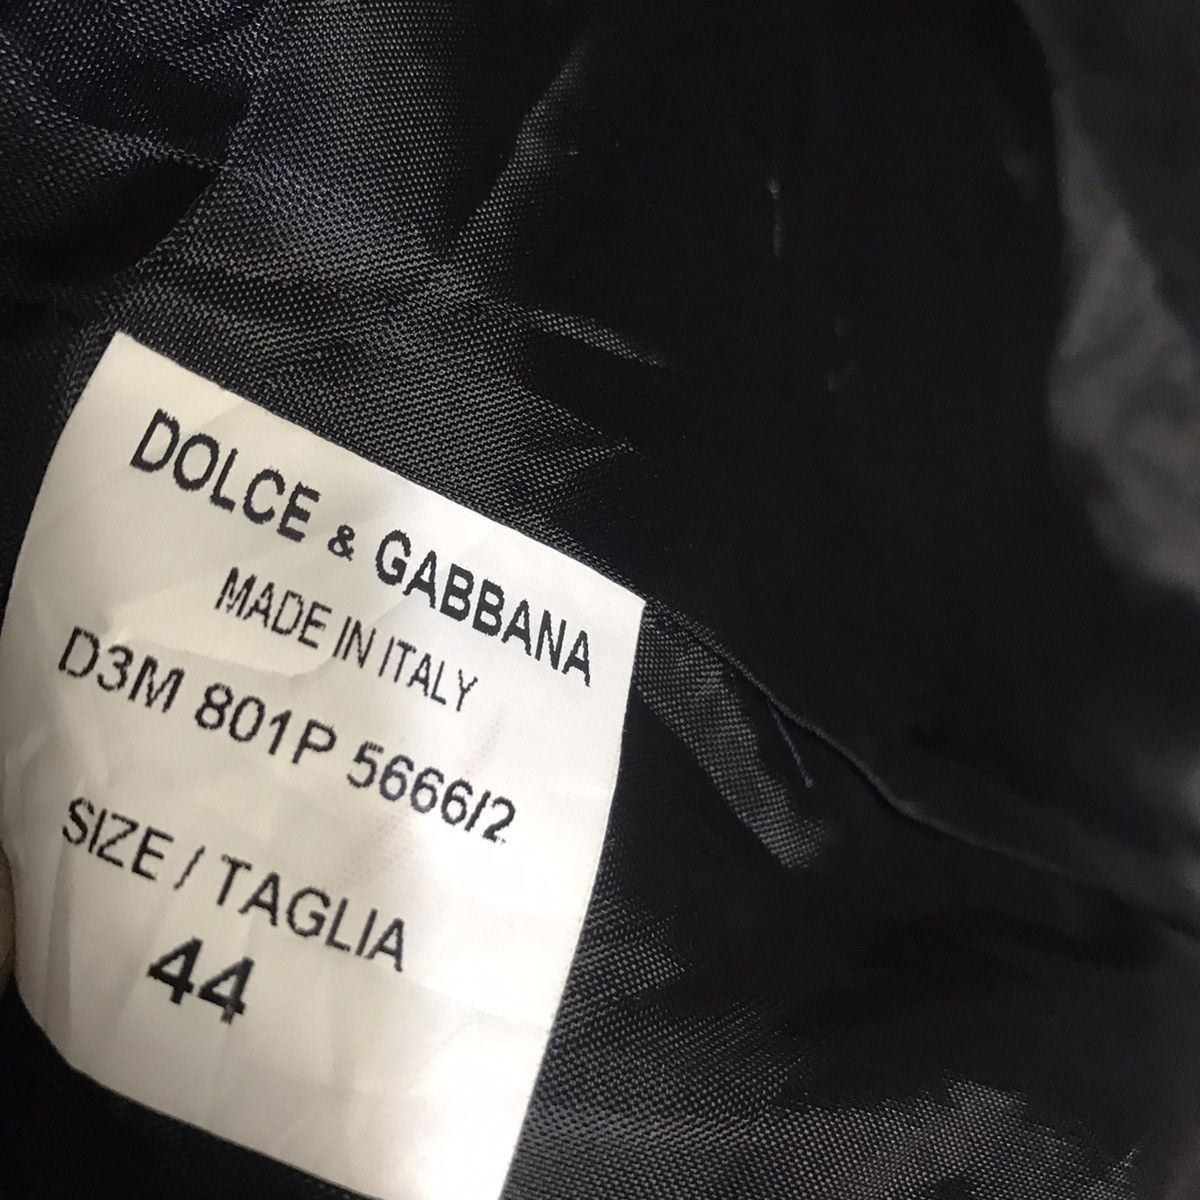 Dolce & gabbana casual blazer - 6